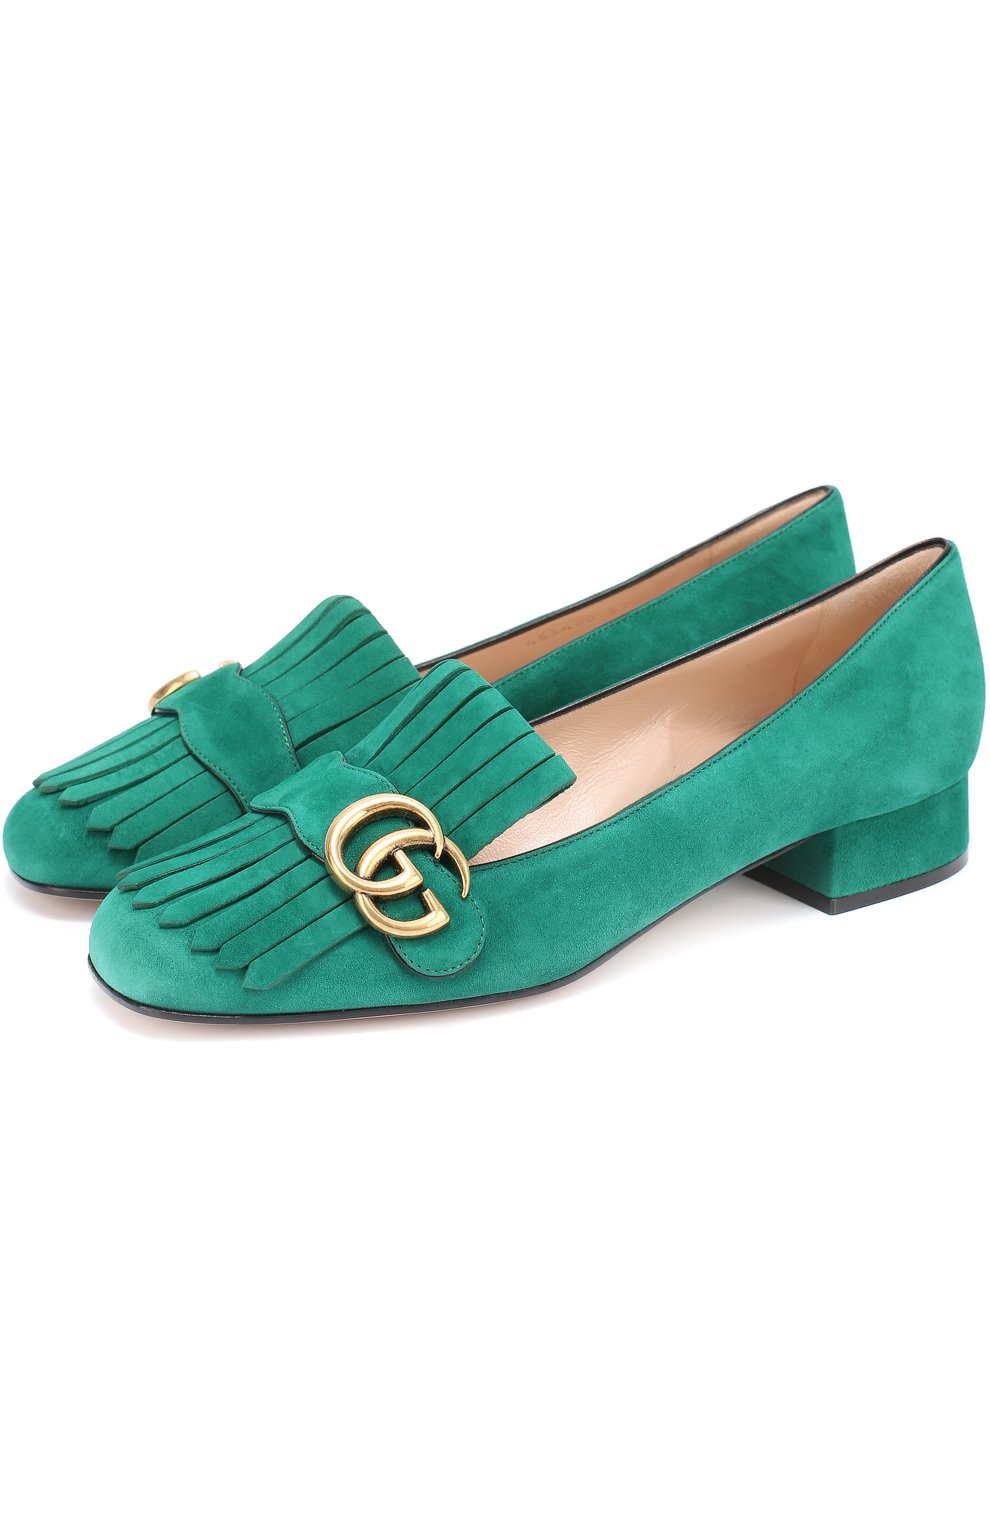 Зеленые замшевые женские. Туфли Gucci Marmont. Туфли гуччи замшевые. Туфли гуччи зеленые. Гуччи туфли женские зеленые.